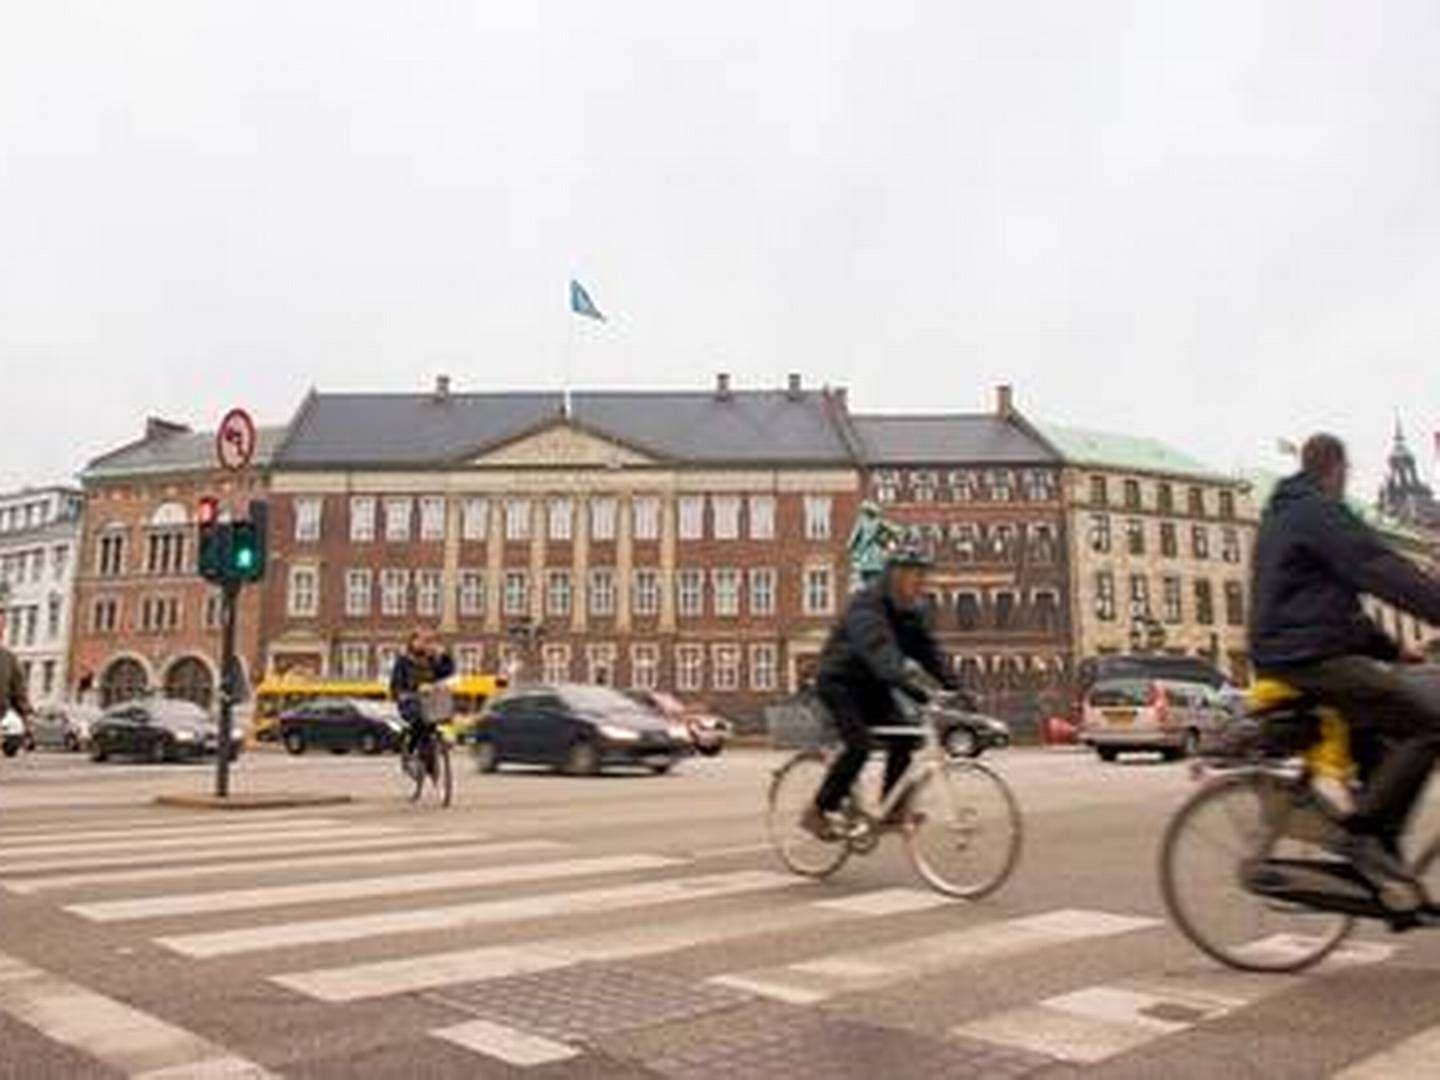 Danske Bank's headquarters in Copenhagen is made up of 15 interconnected properties. | Photo: PR